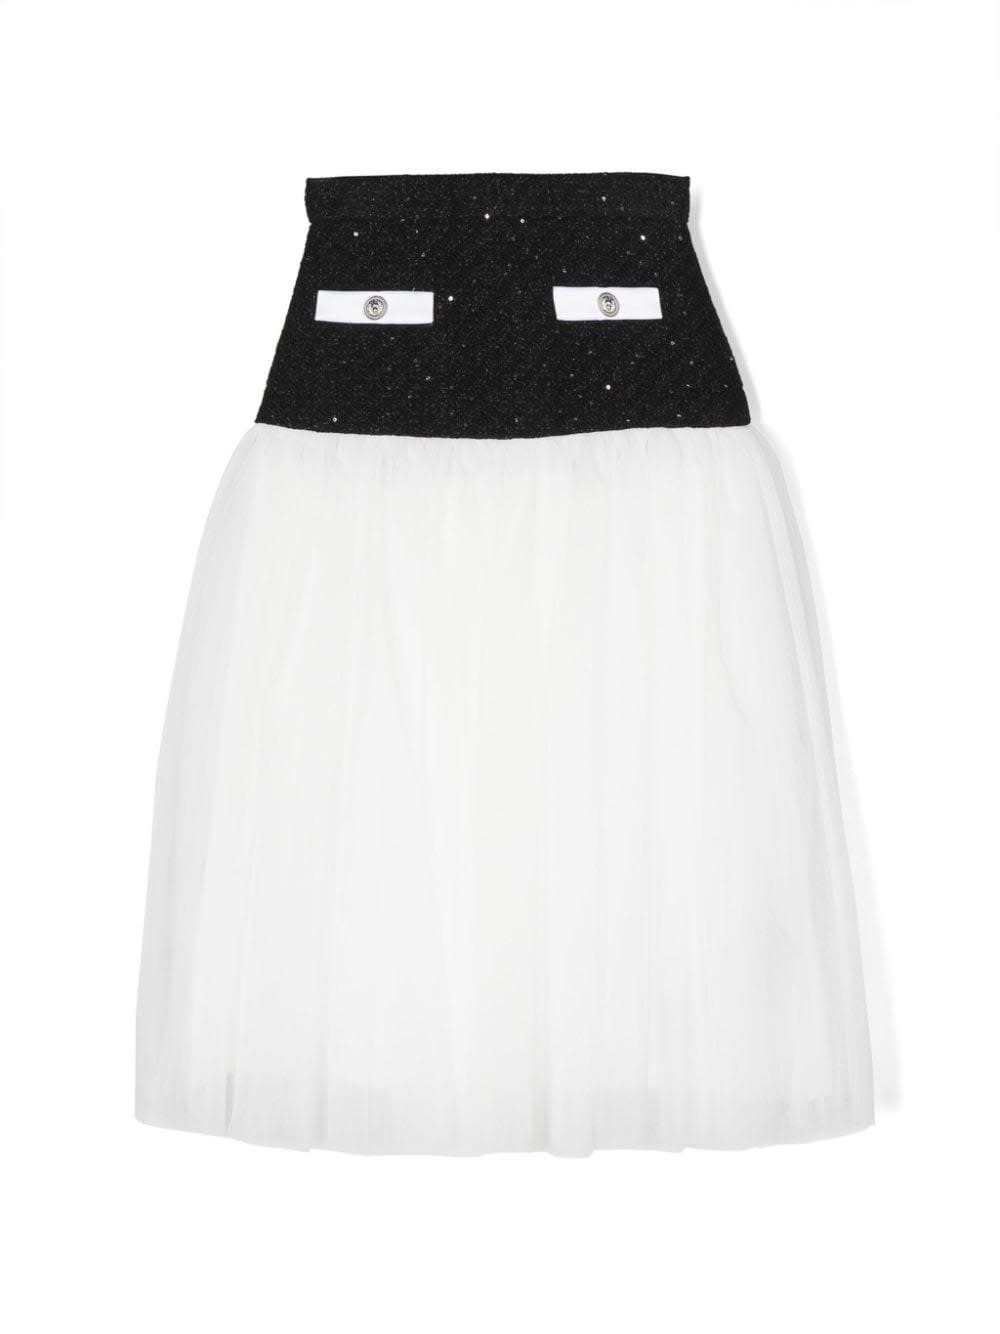 Balmain Kids' Skirt With Insert Design In Black